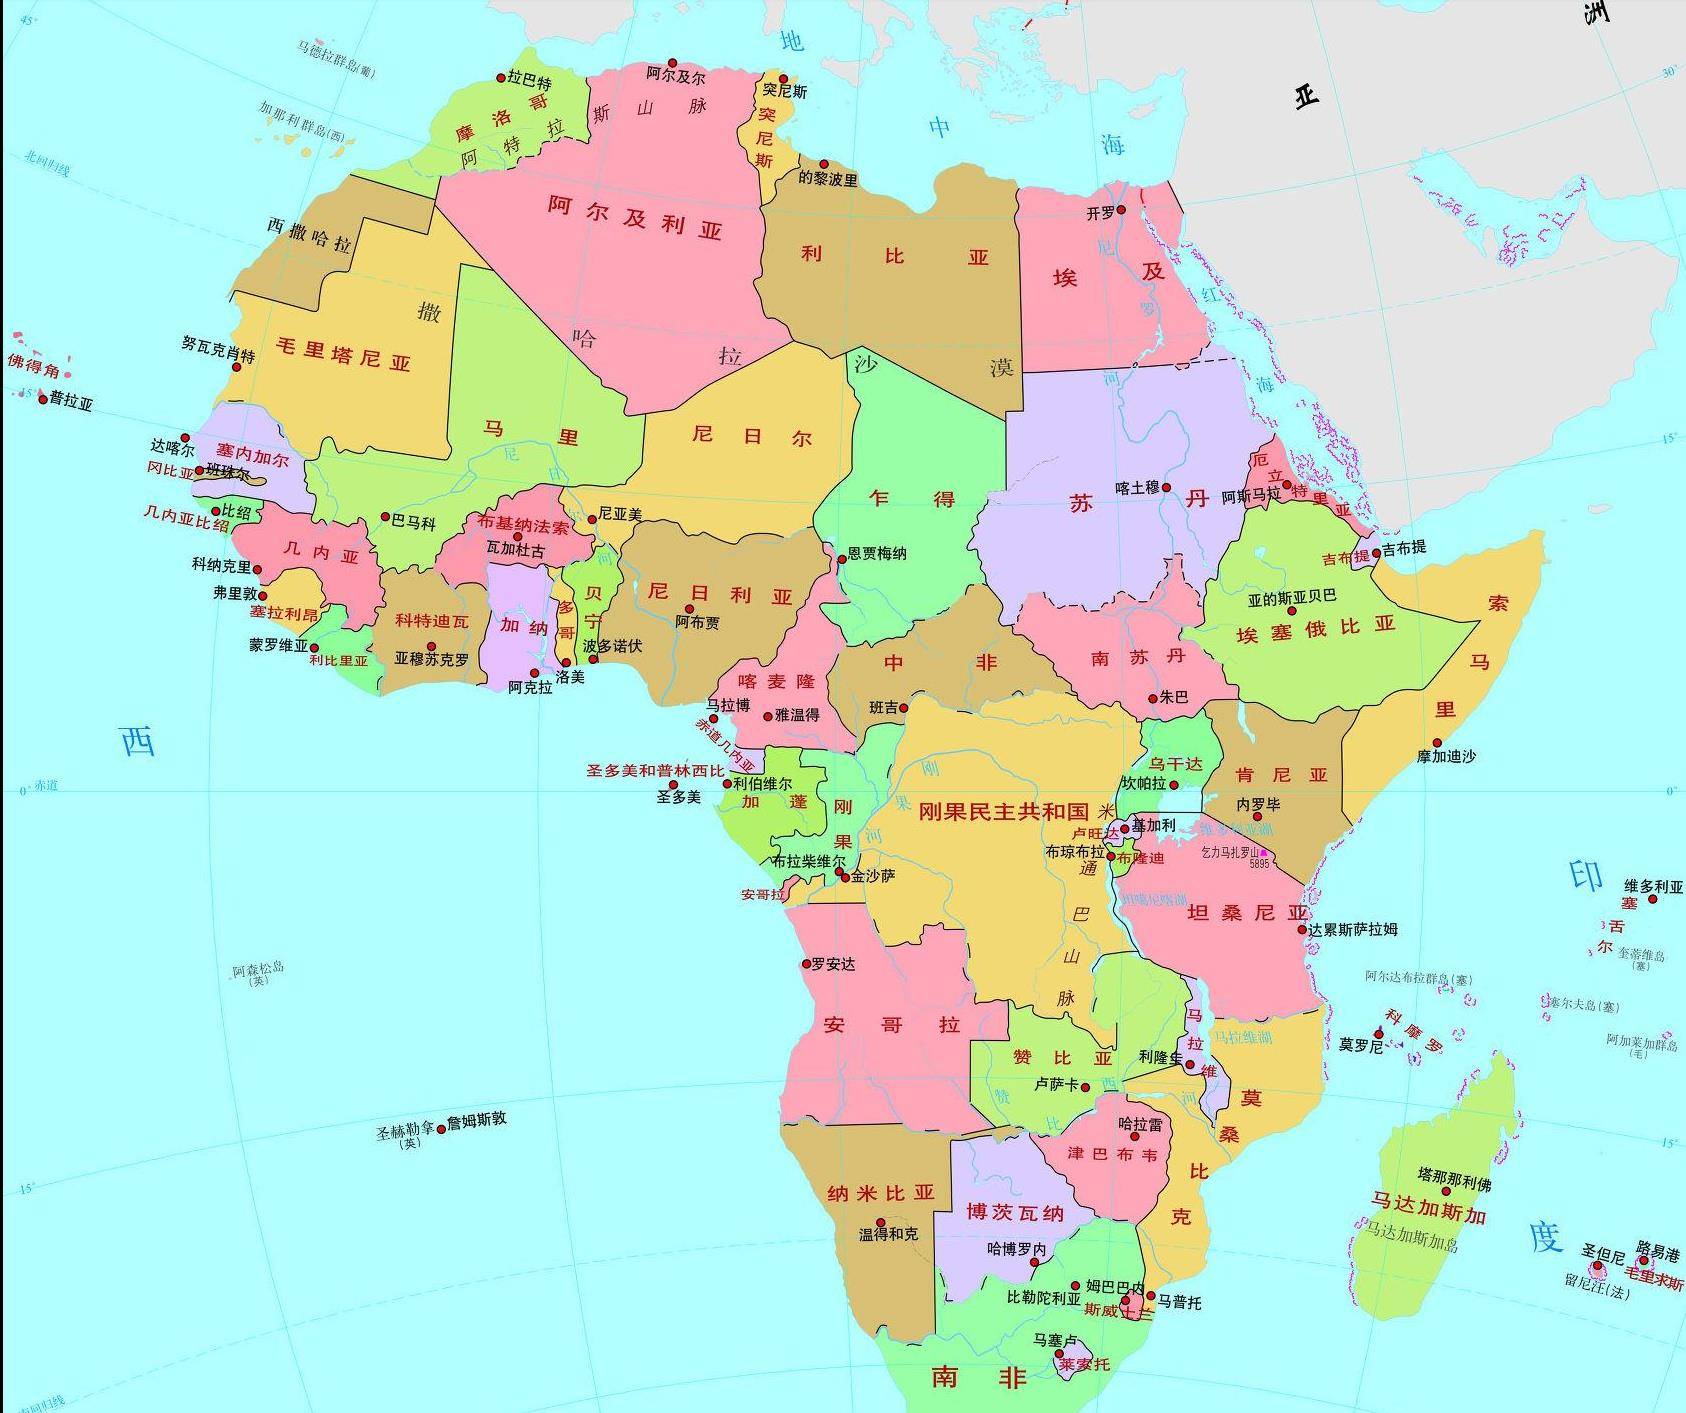 二战非洲人口图片